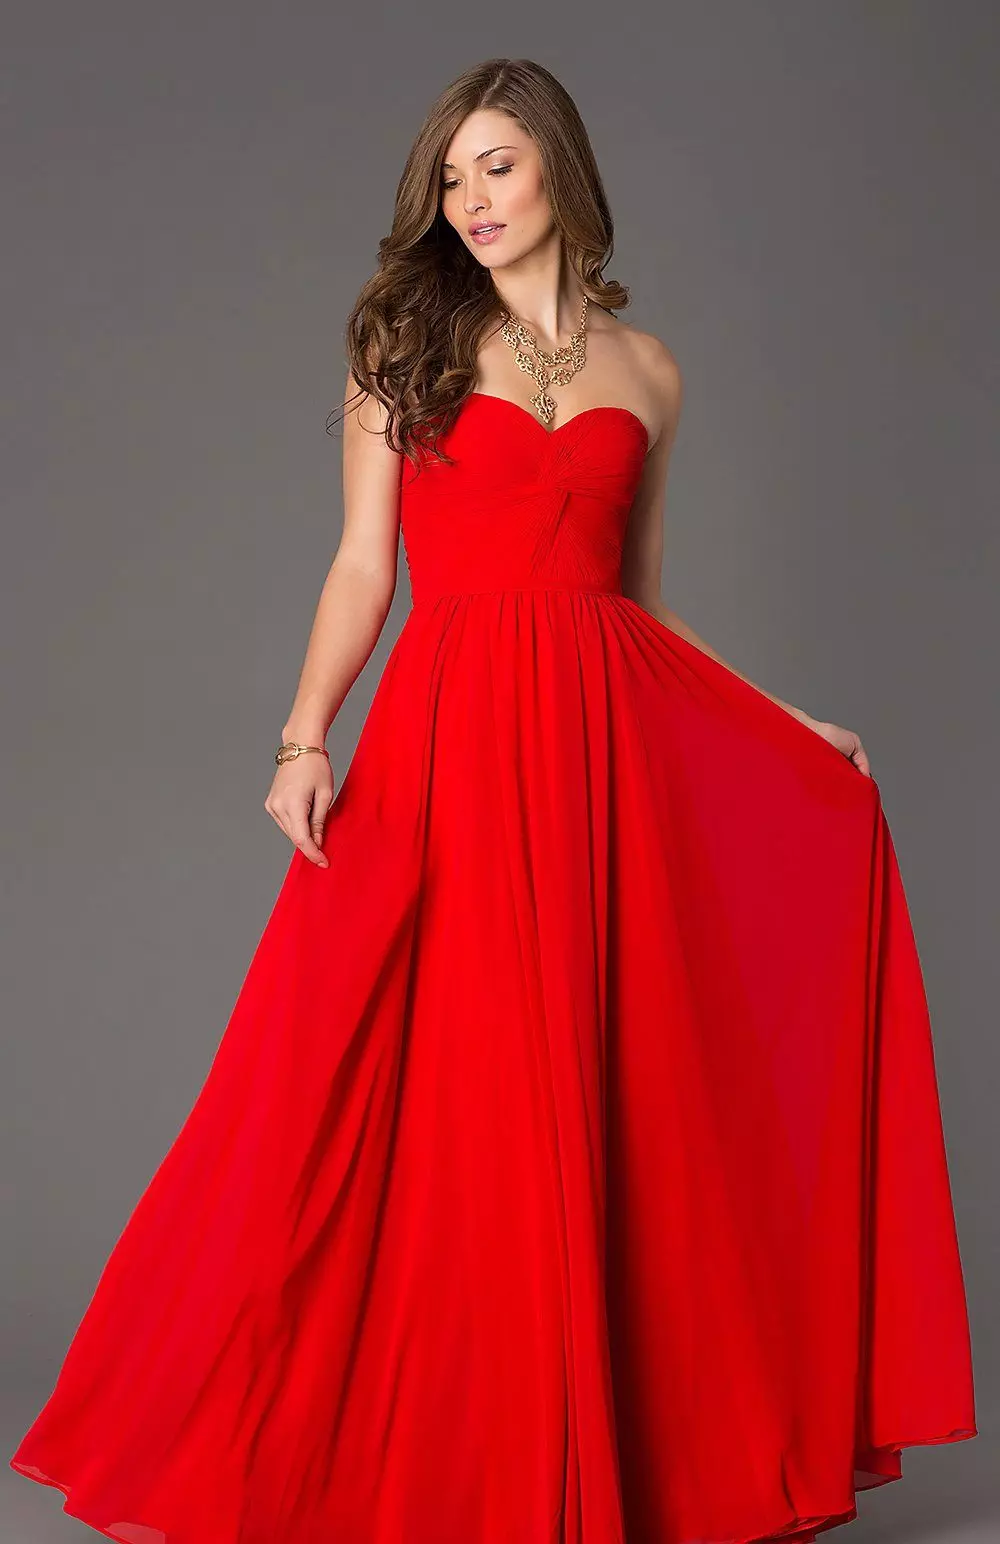 زیبا لباس قرمز طولانی با کرست